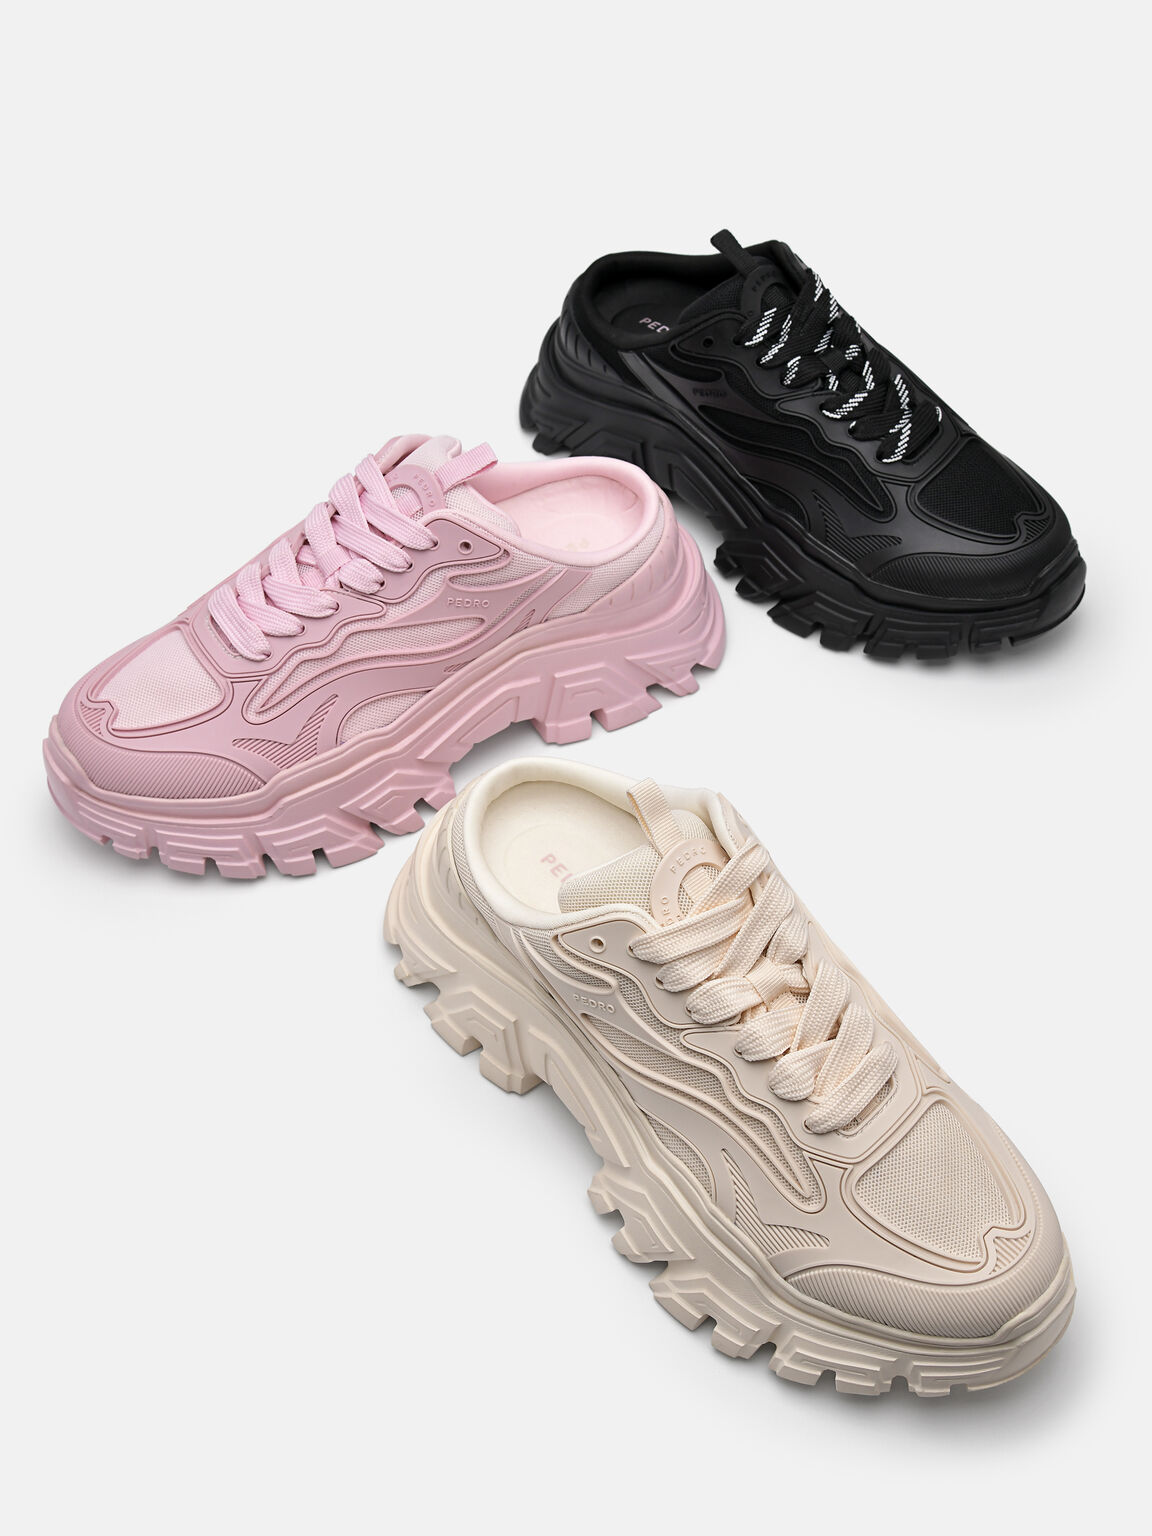 Summit Slip-On Sneakers, Light Pink